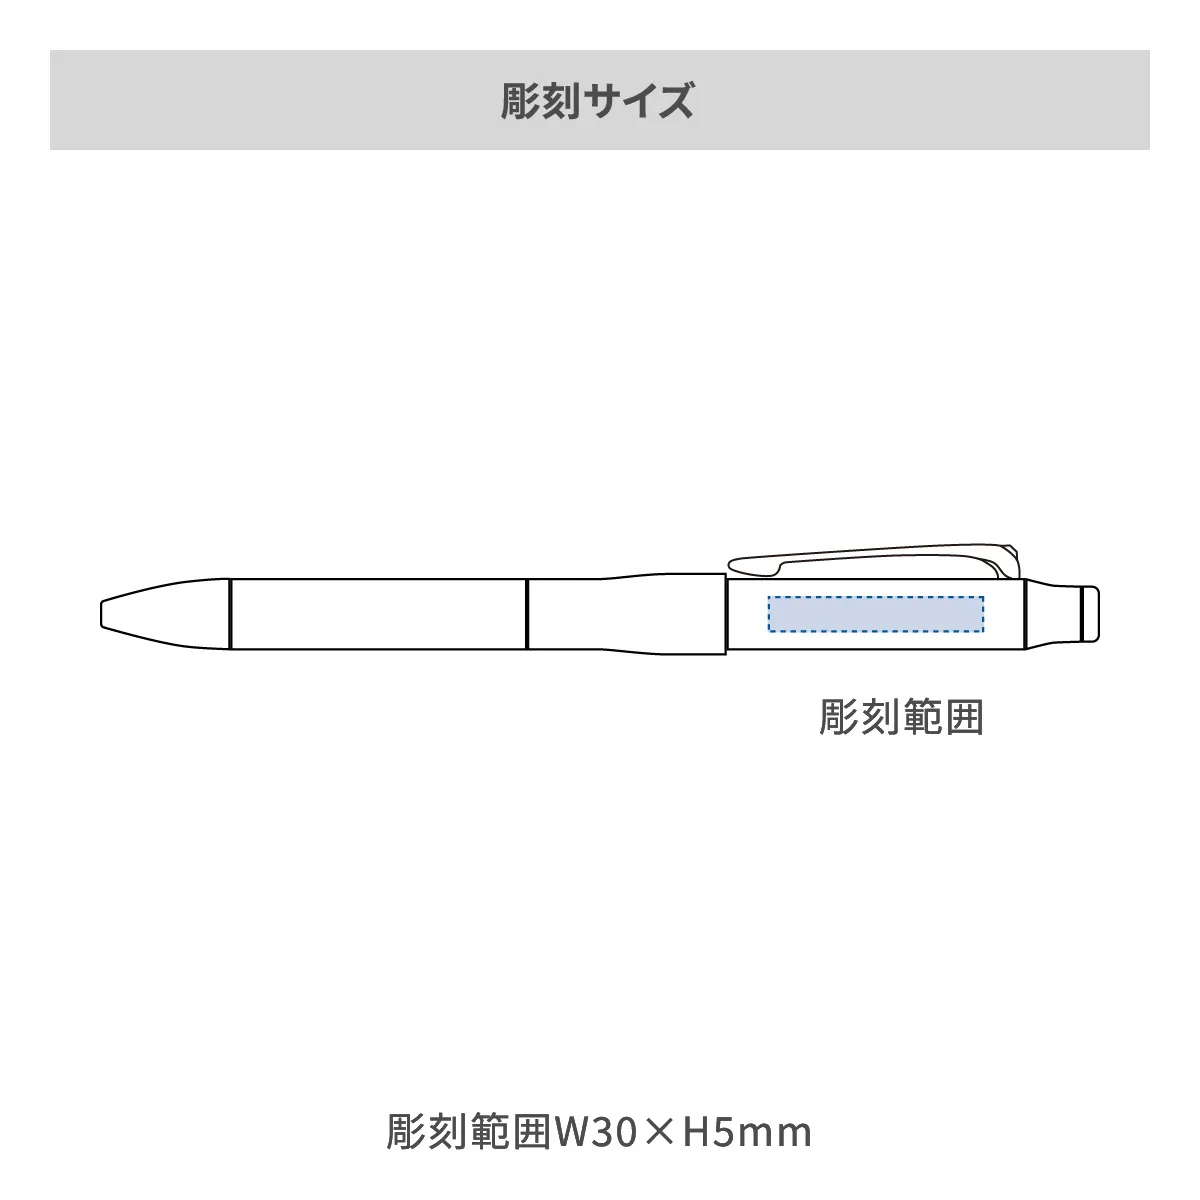 【短納期】三菱鉛筆 ジェットストリーム プライム 多機能ペン 3&1 0.5mm【多機能ペン / レーザー彫刻】 画像2